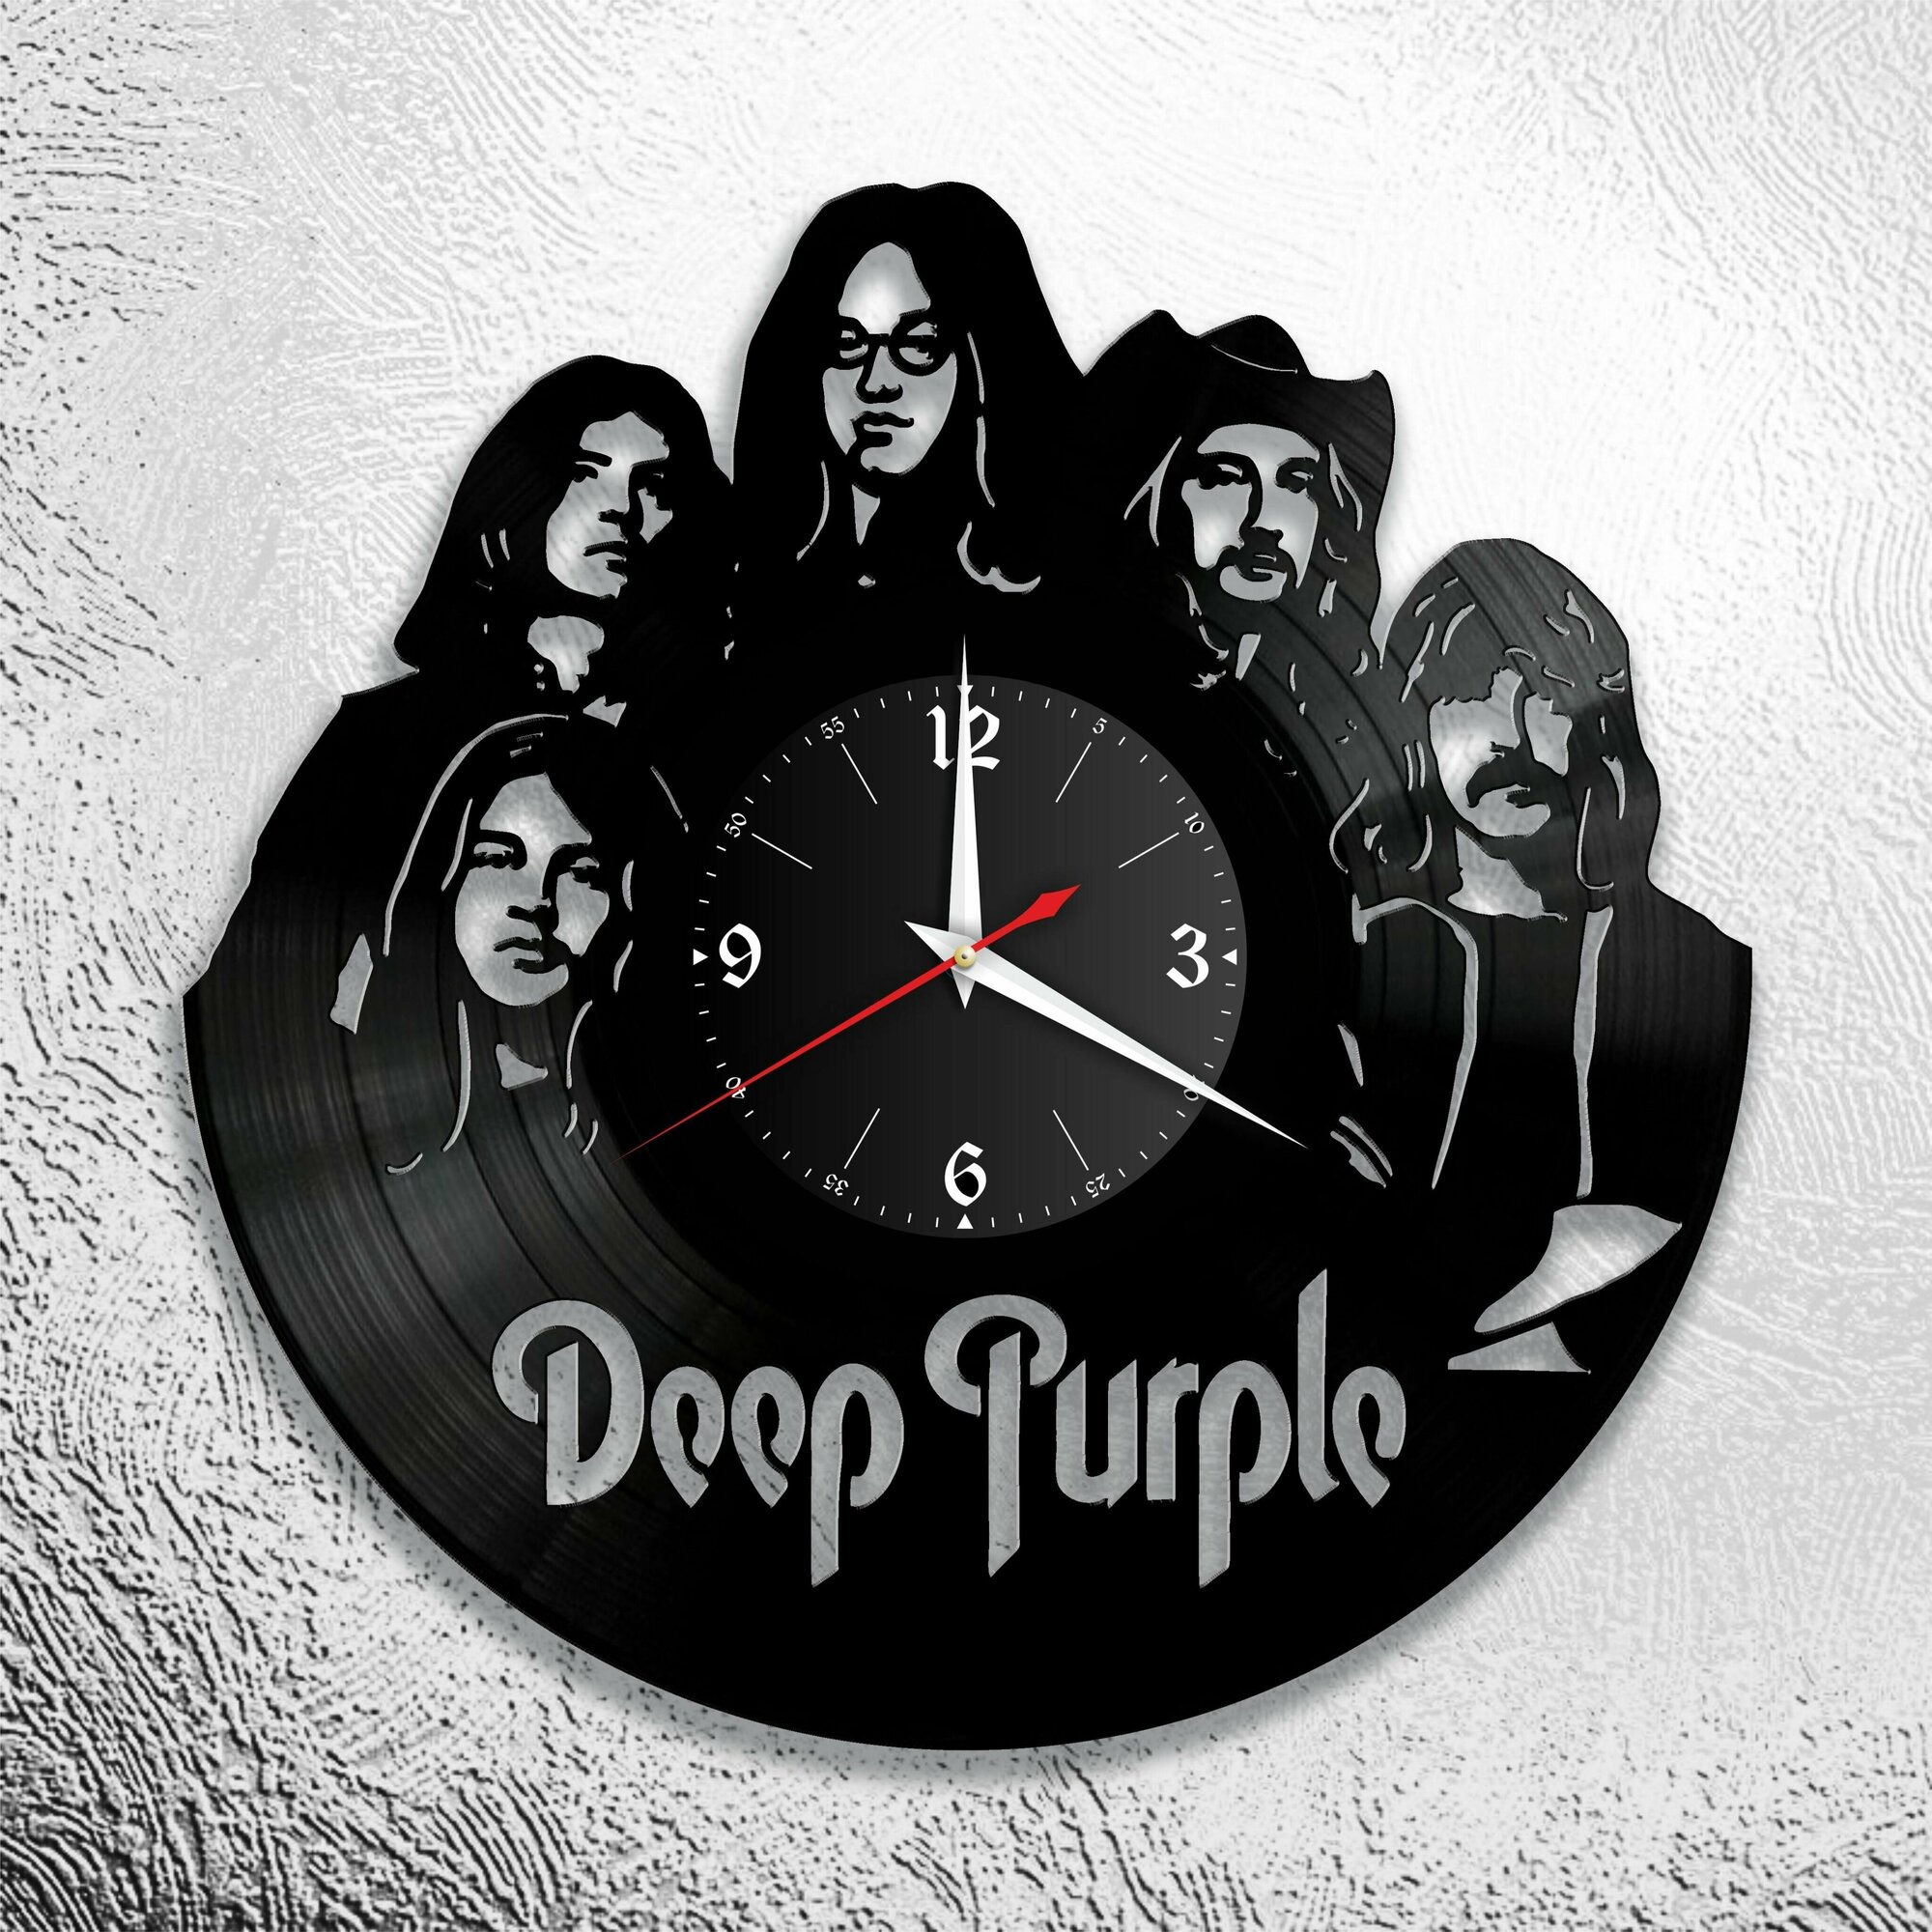 Настенные часы с группой Deep Purple, Дип Пёрпл, Jon Lord, Ian Gillan